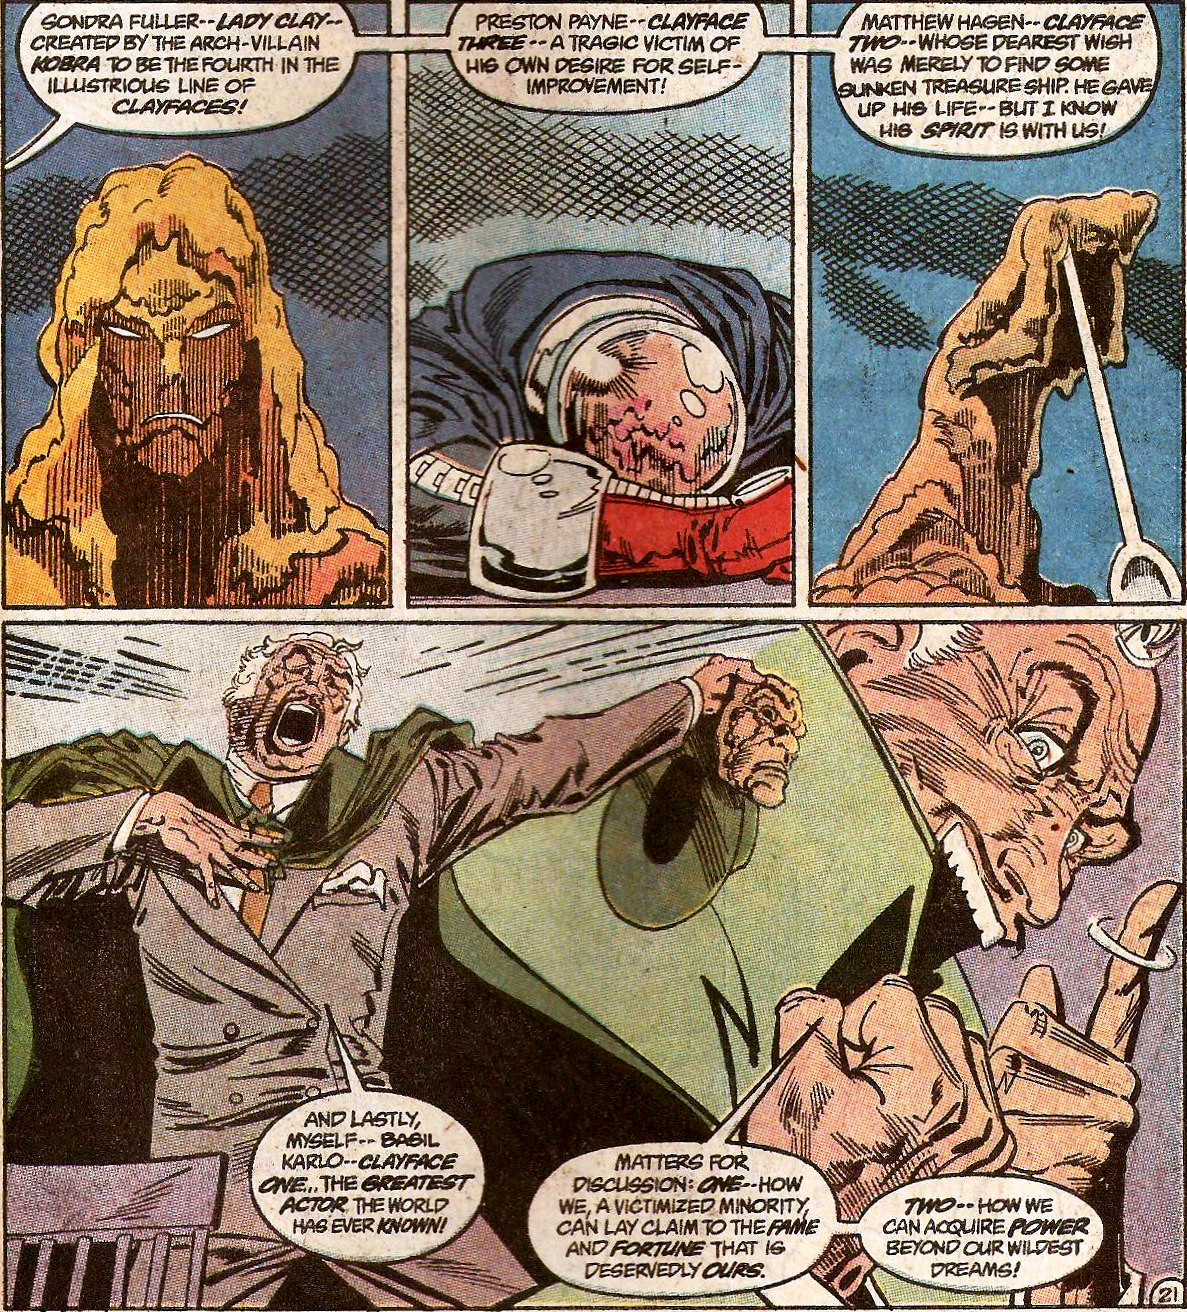 From Detective Comics (Vol. 1) #604 (1989)